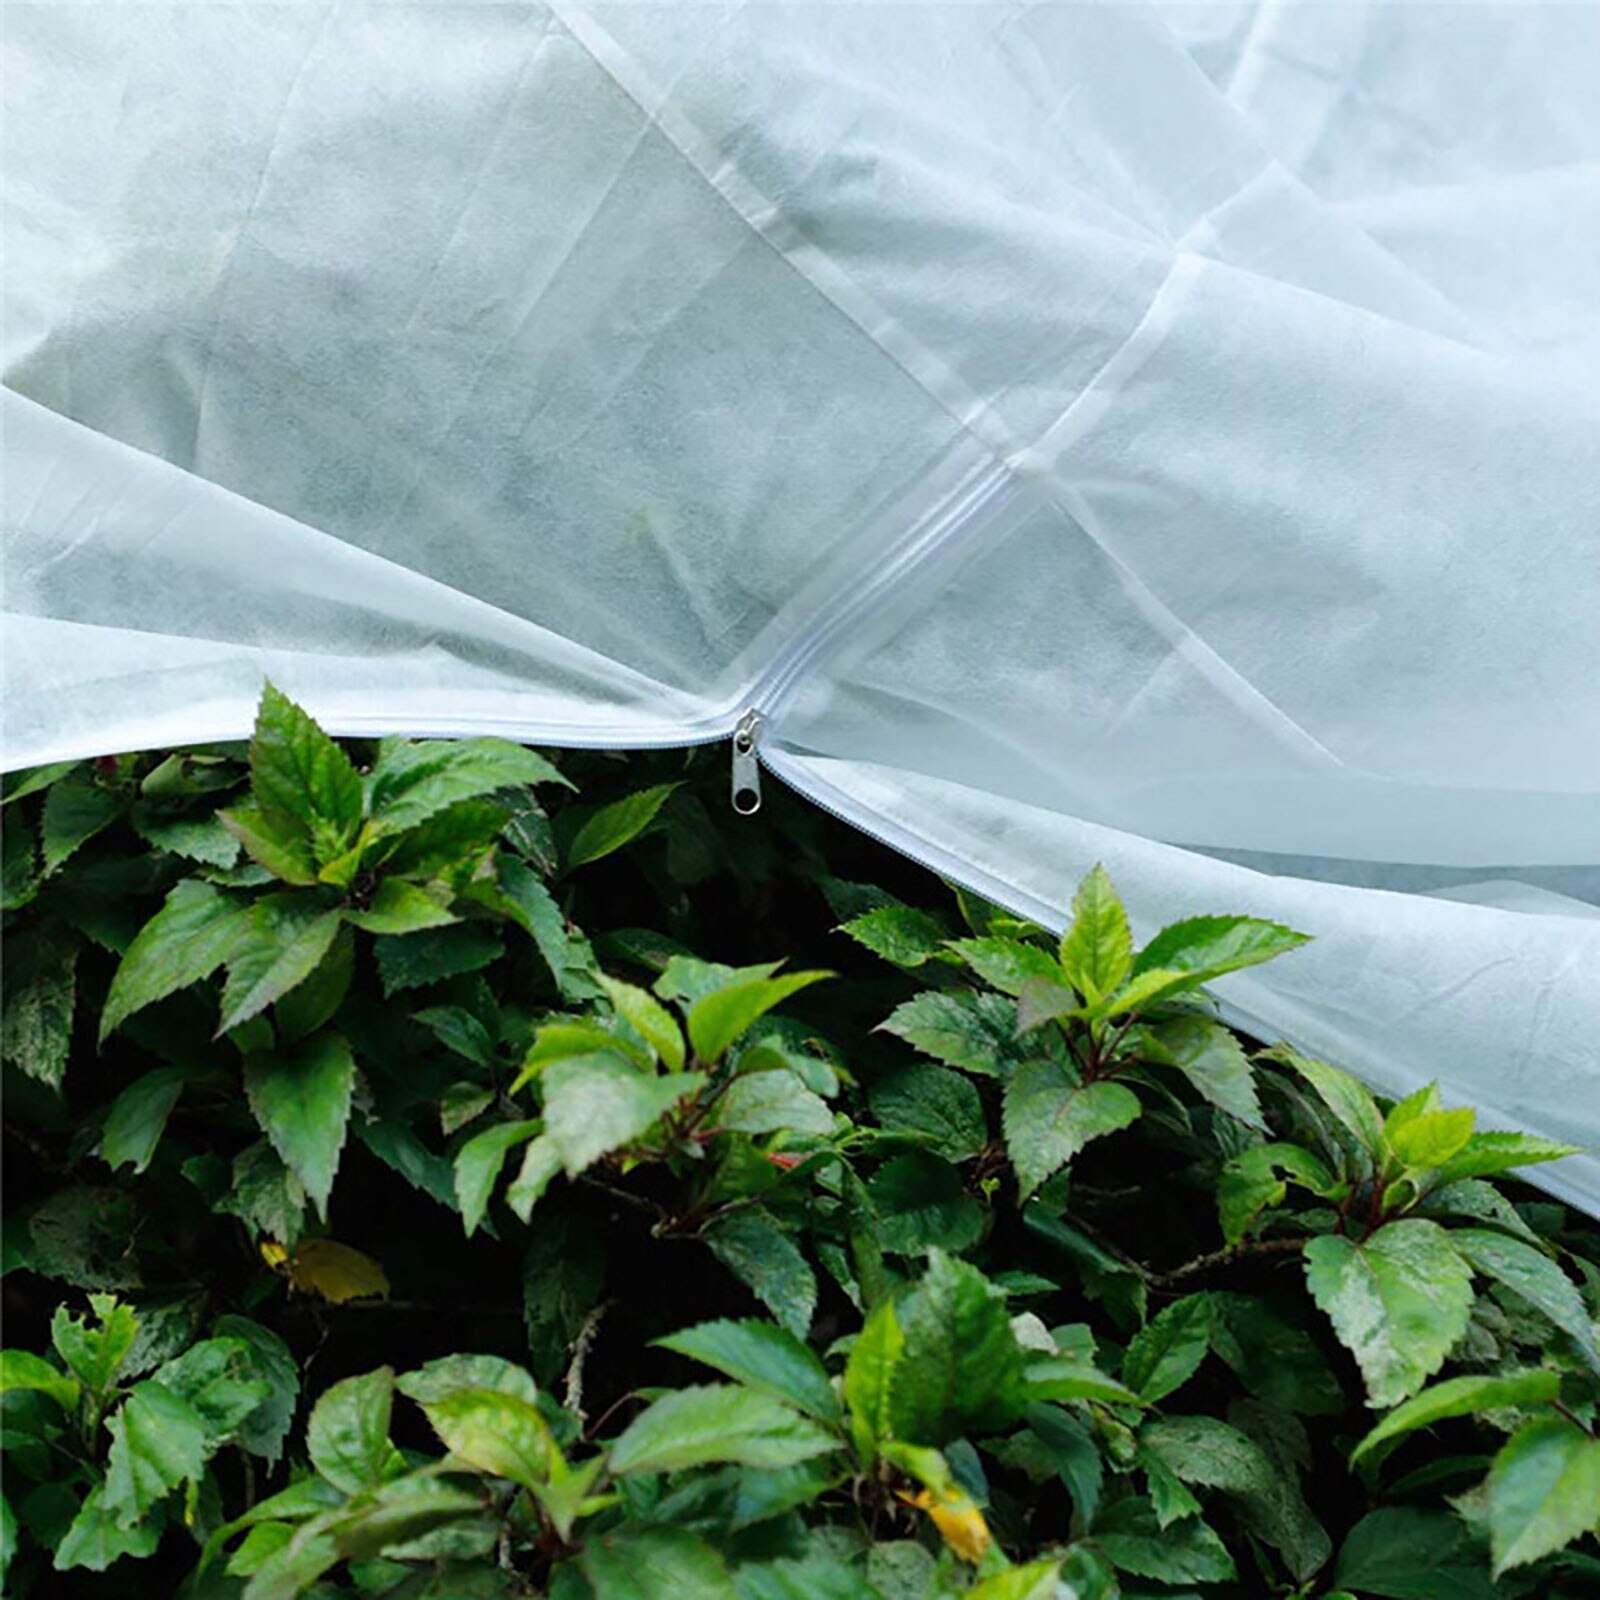 varme plantebeskyttelses frostbeskyttelse beskytter dine planter mod frostskader vinterhavebeskyttelse plantedæksel – Grandado